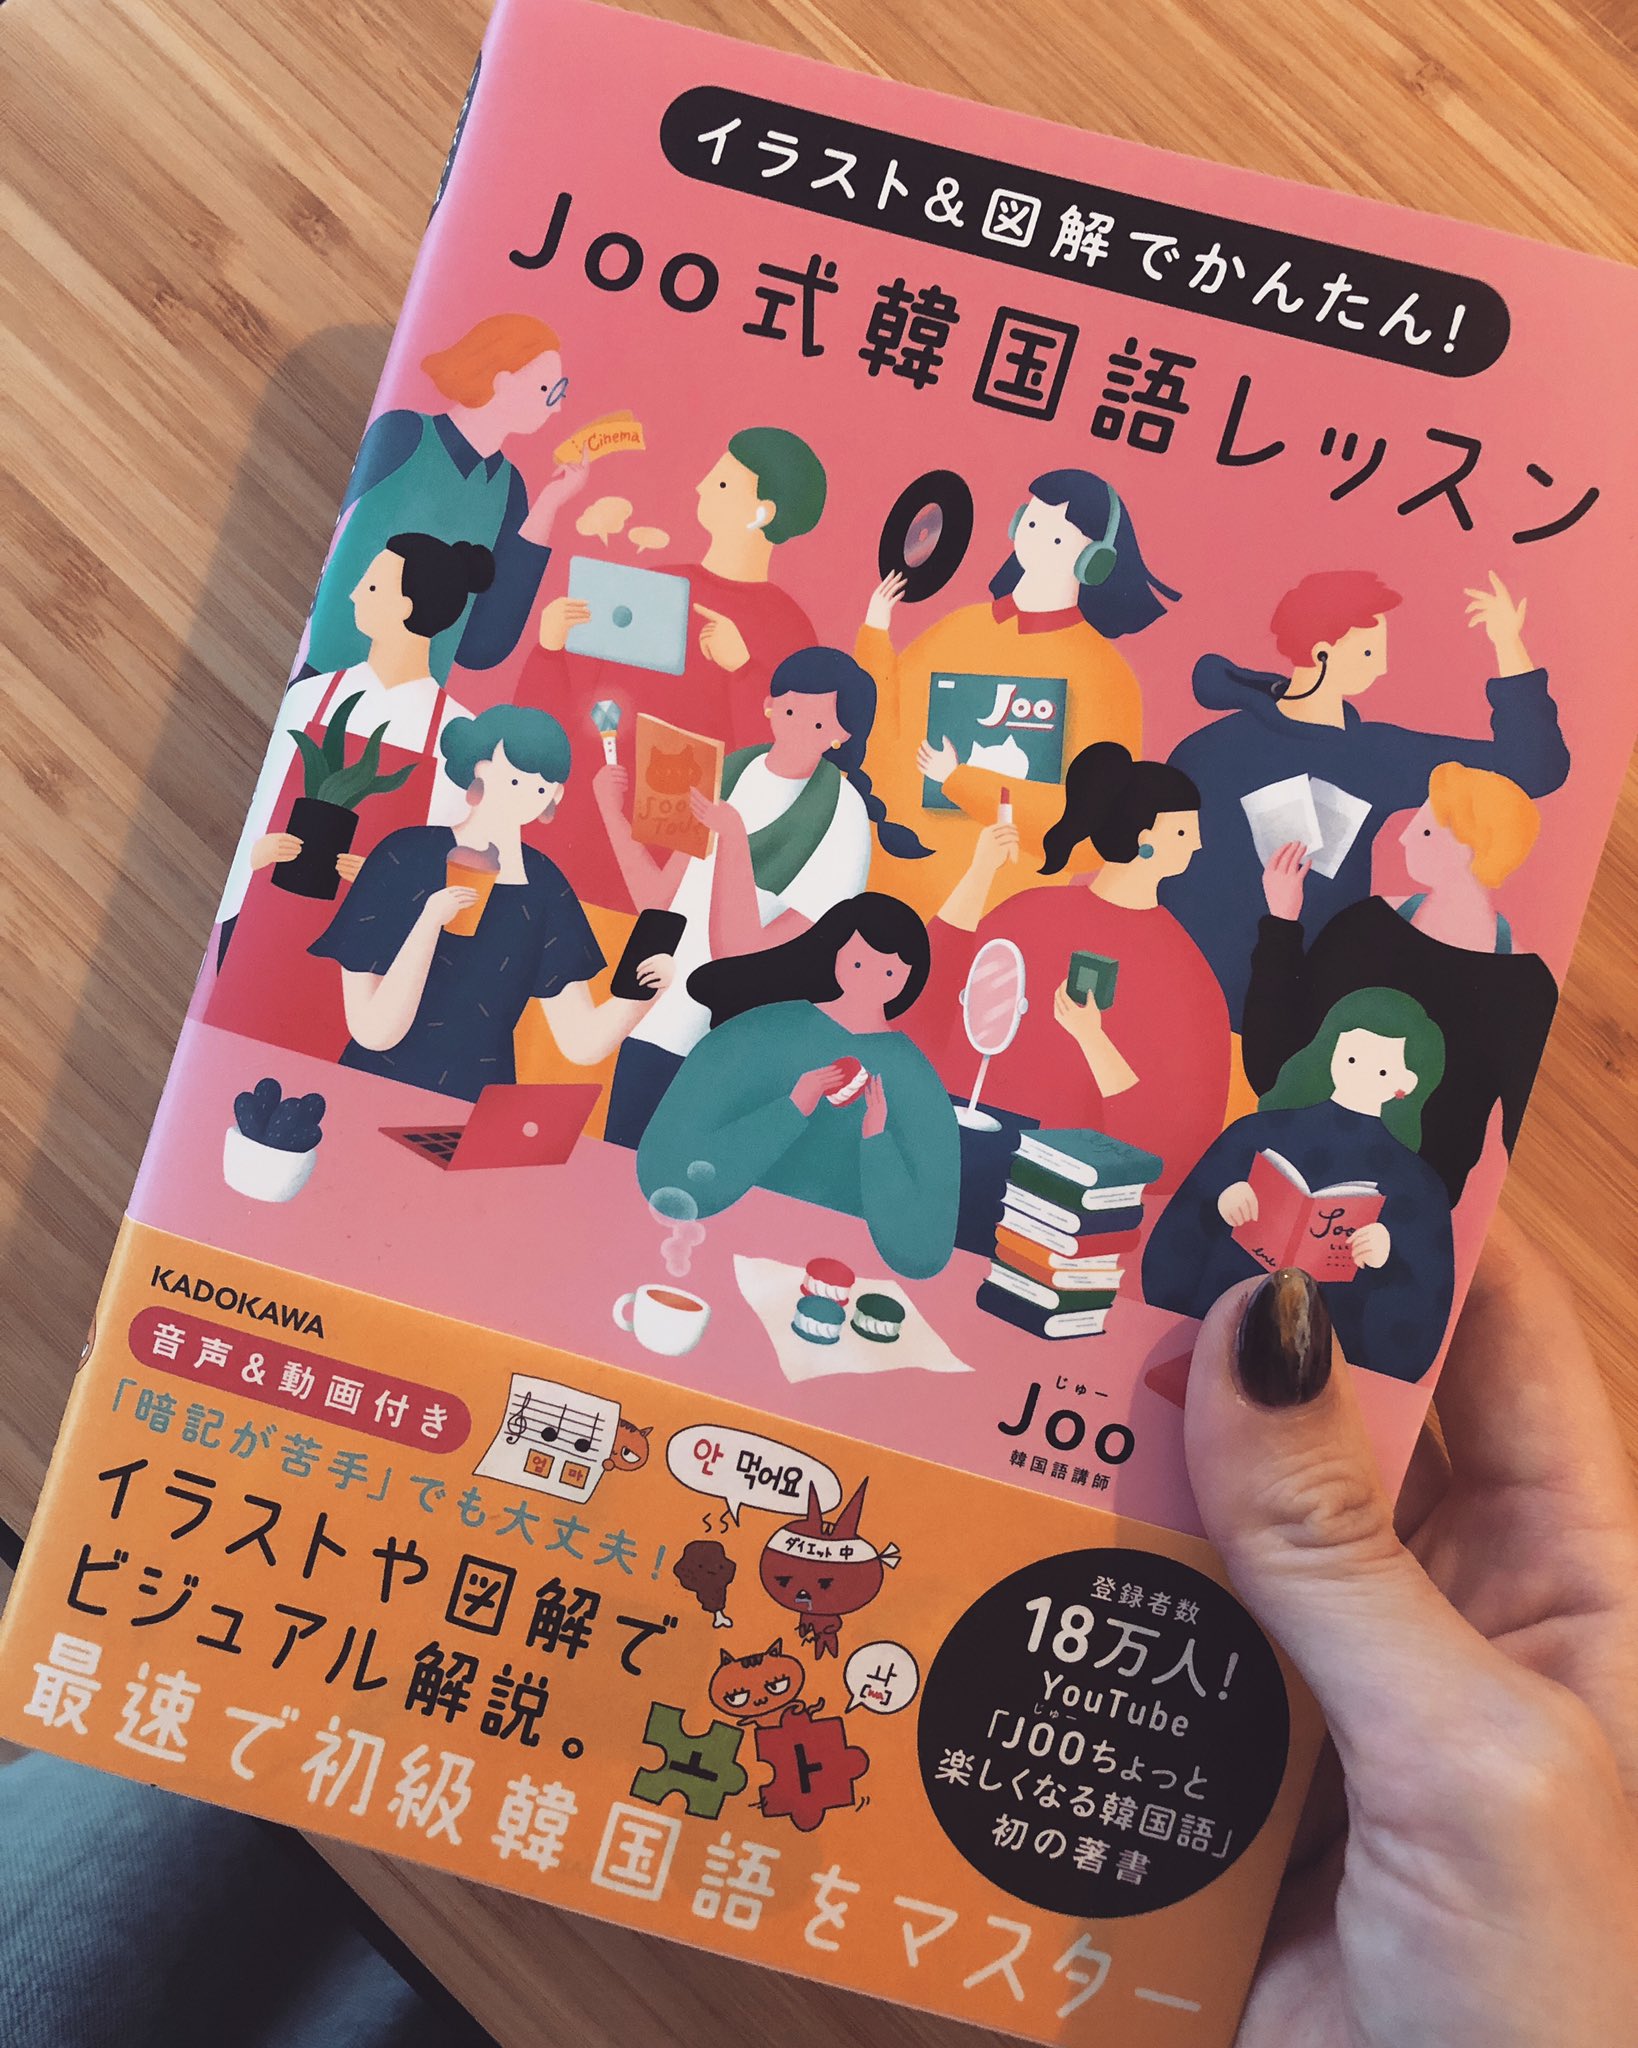 ちょっと楽しくなる韓国語joo 本が無事に出版できましたー Joo式韓国語レッスン Jooの音声付き Jooの講座 映像付き 分かりやすいイラスト 図鑑 初級まではこの一冊でok 出版に関わってくださった皆さん 応援してくださったjoos